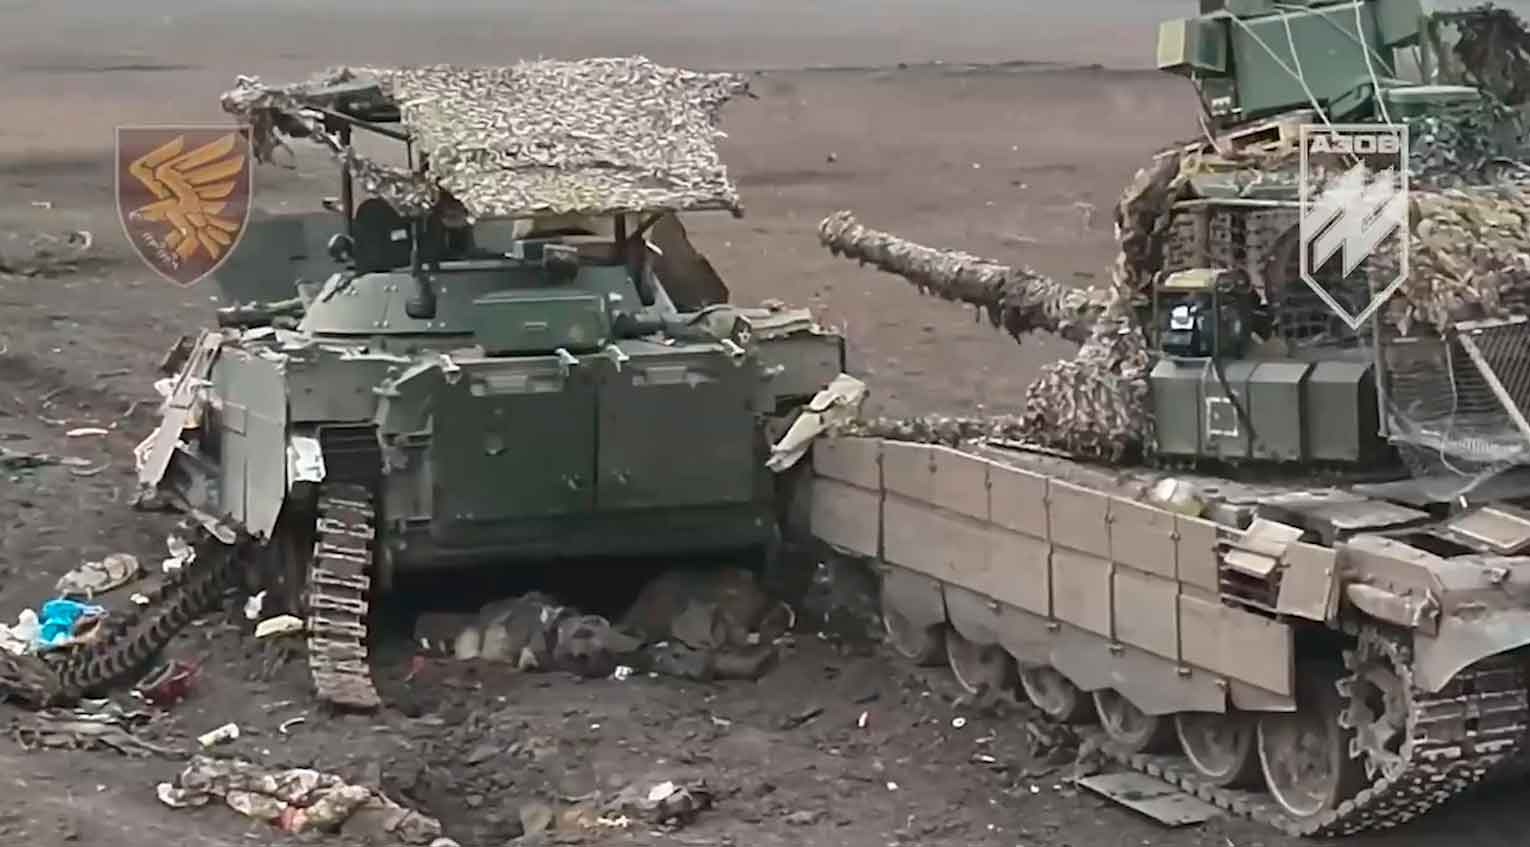 Vídeo mostra coluna de blindados russos sendo destruída em Donetsk. fotos e vídeo: Twitter @EuromaidanPress